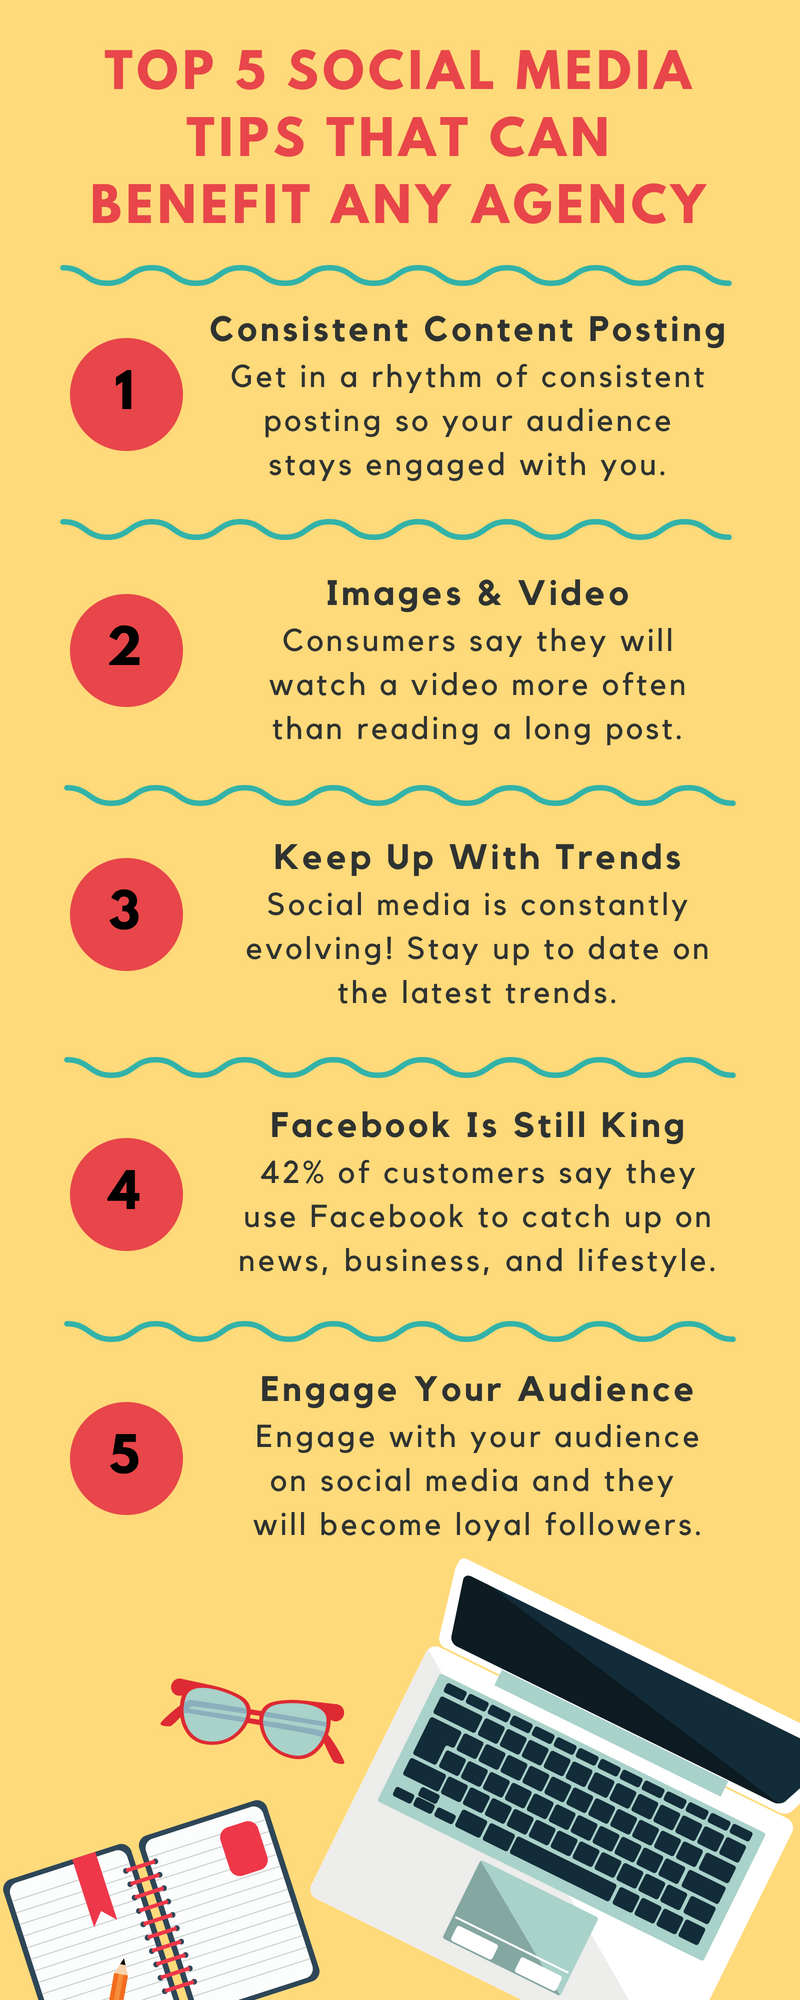 Top 5 Social Media Tips!